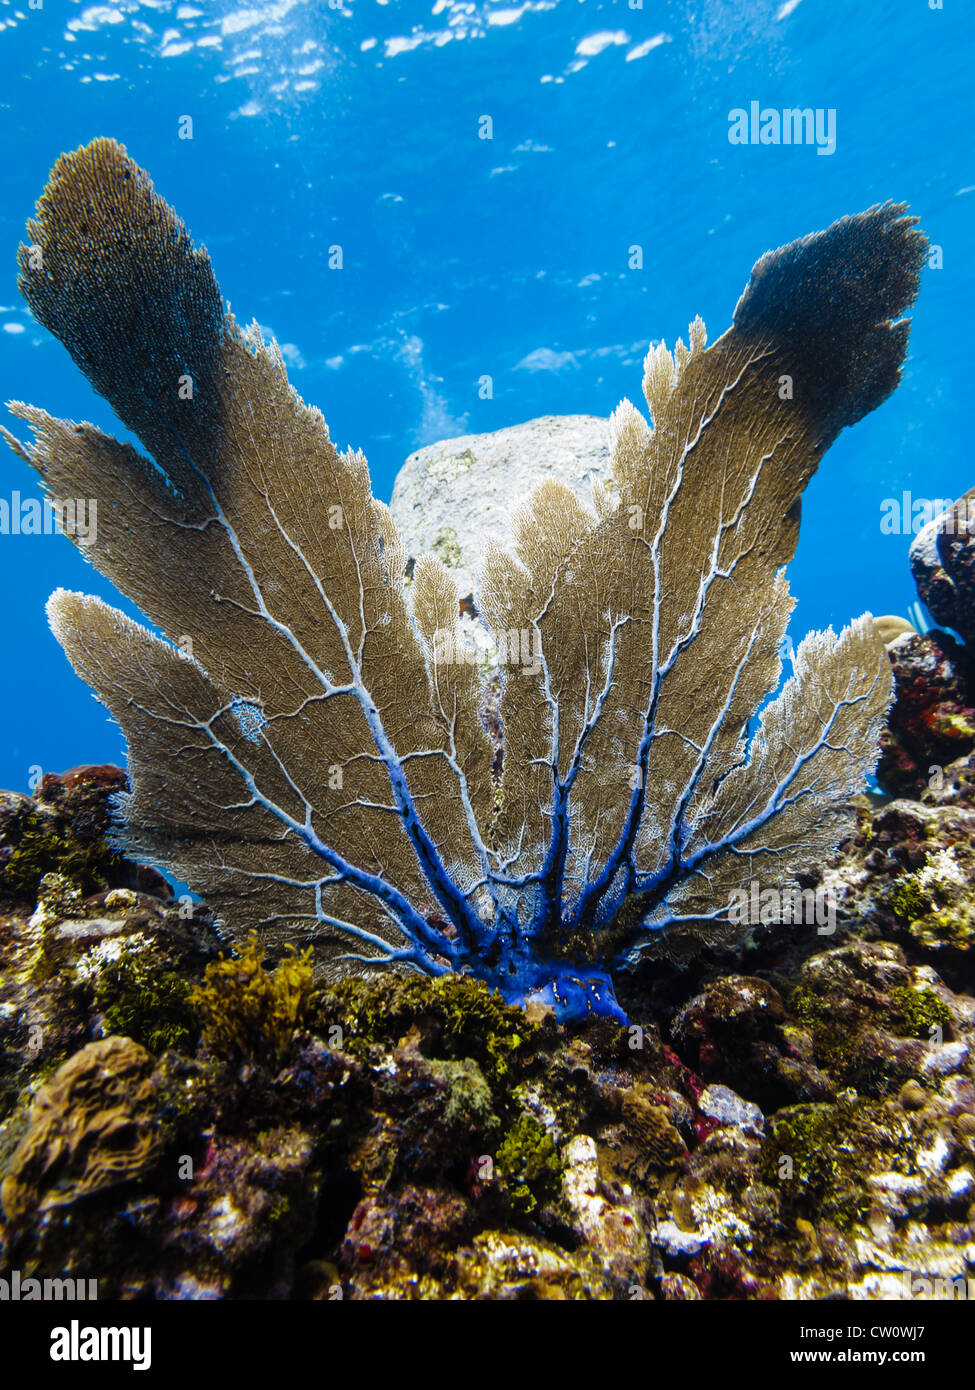 LITTLE CORN ISLAND, NICARAGUA: Brown and purple sea fan gorgonia plexauridae menella on coral reef in Caribbean sea Stock Photo